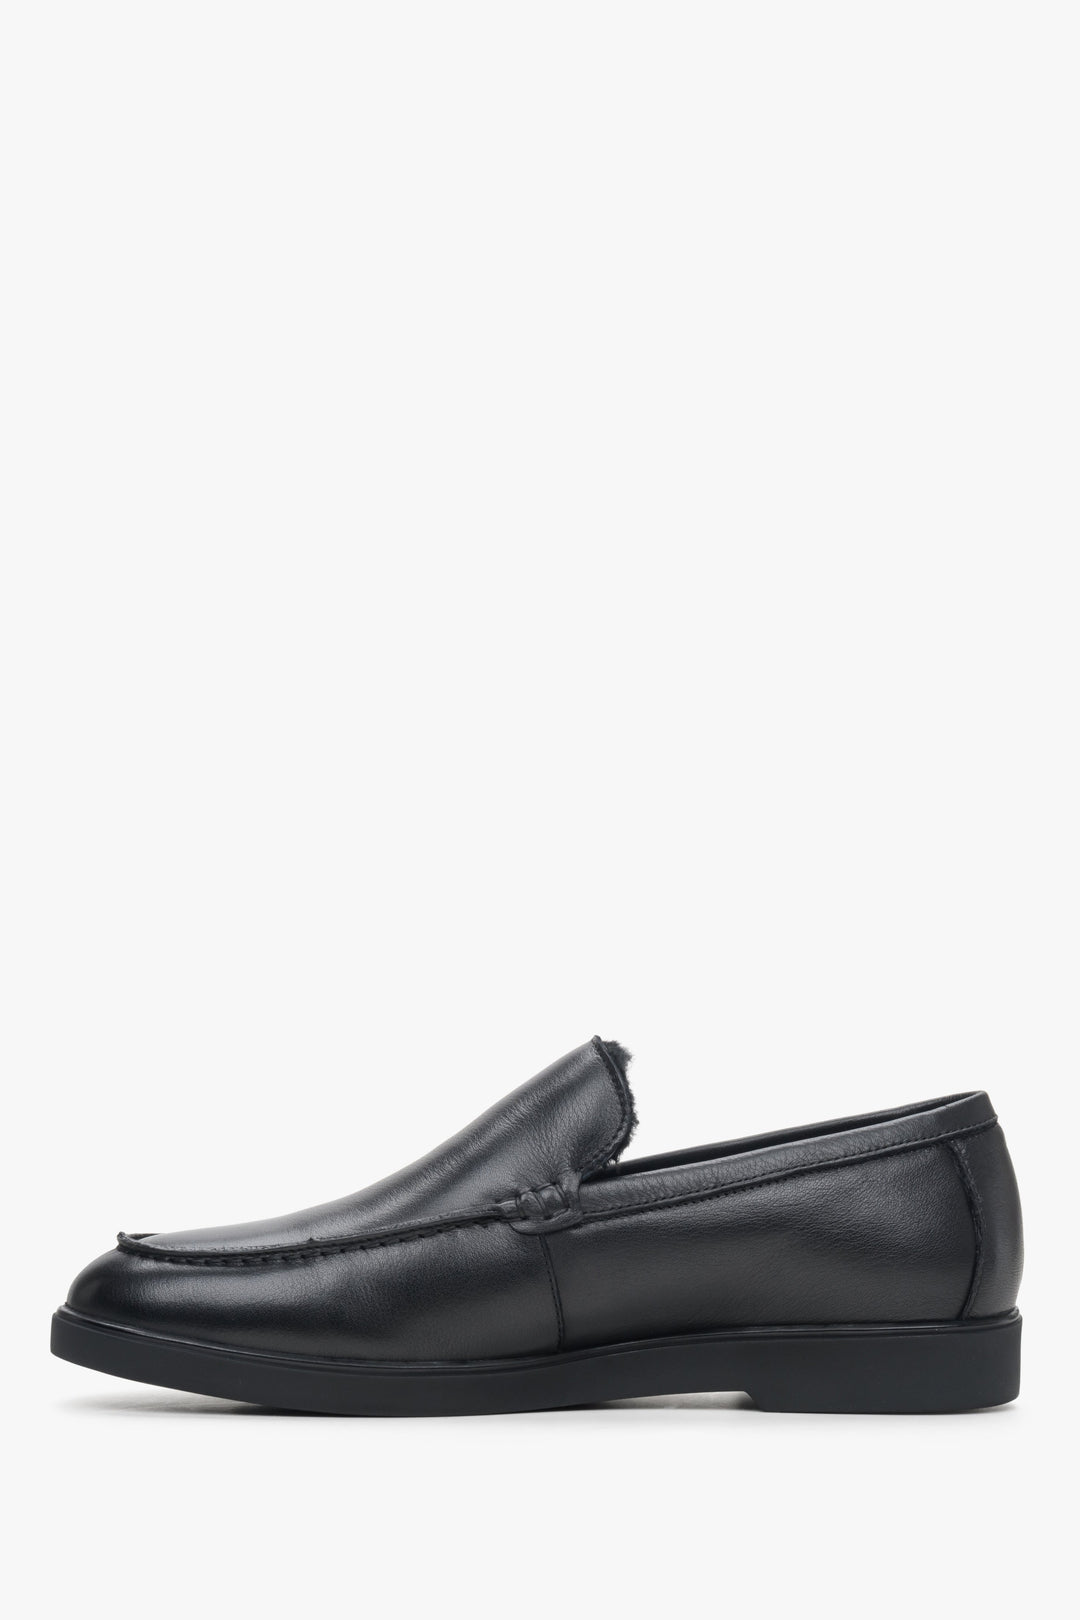 Leather men's black moccasins by Estro - shoe profile.